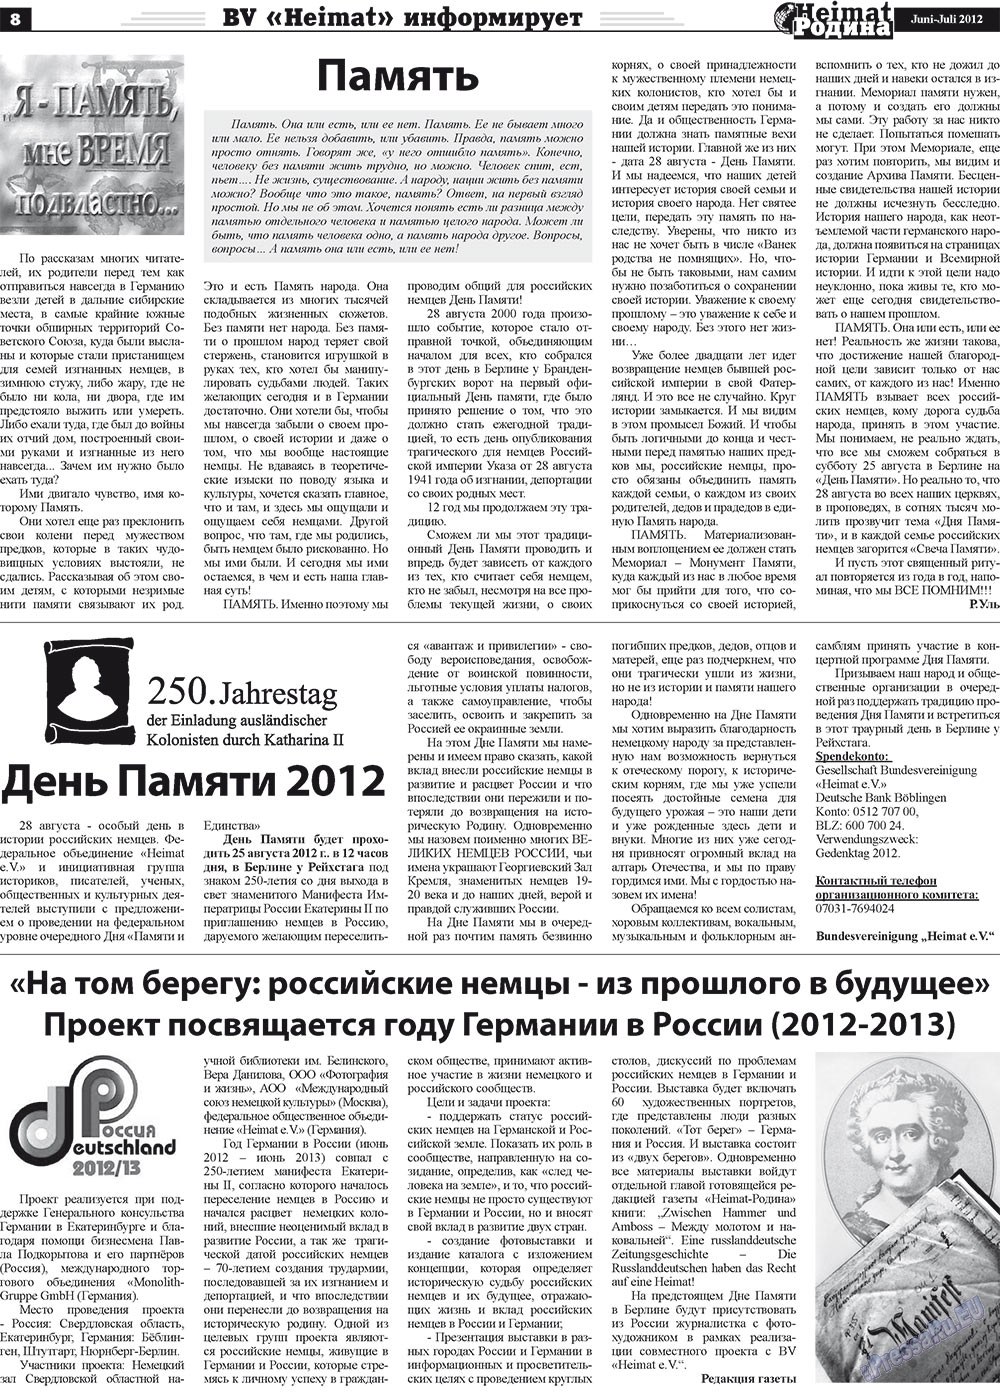 Heimat-Родина (газета). 2012 год, номер 5, стр. 8